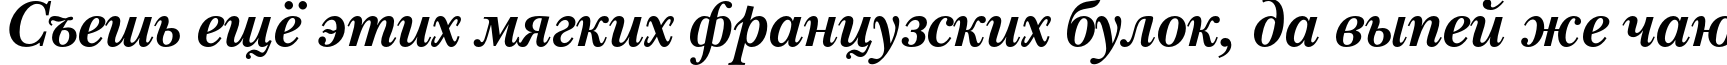 Пример написания шрифтом NewBaskervilleC Bold Italic текста на русском